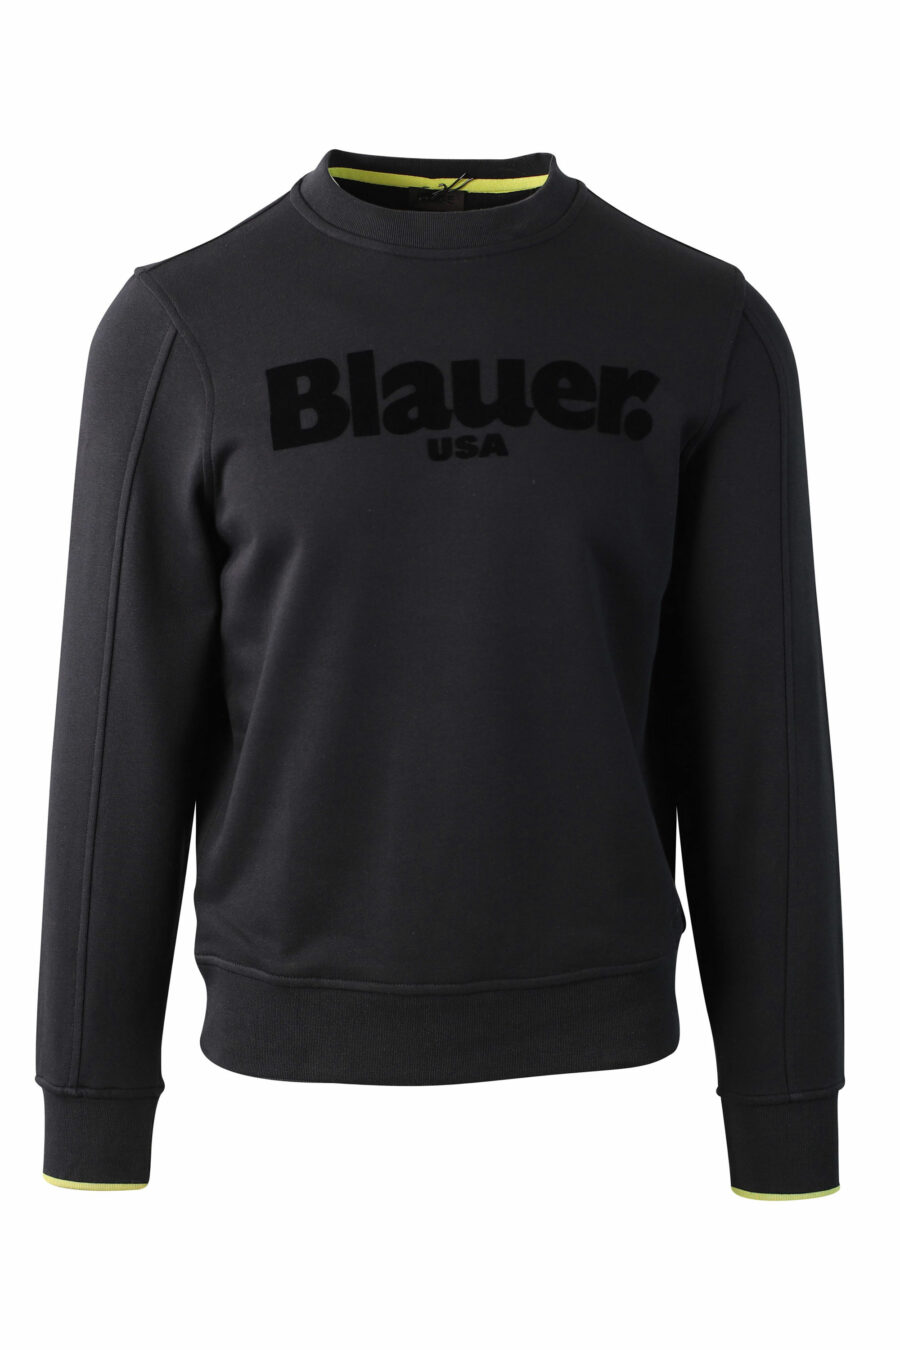 Schwarzes Sweatshirt mit einfarbigem Samt-Maxilogo - IMG 0030 1